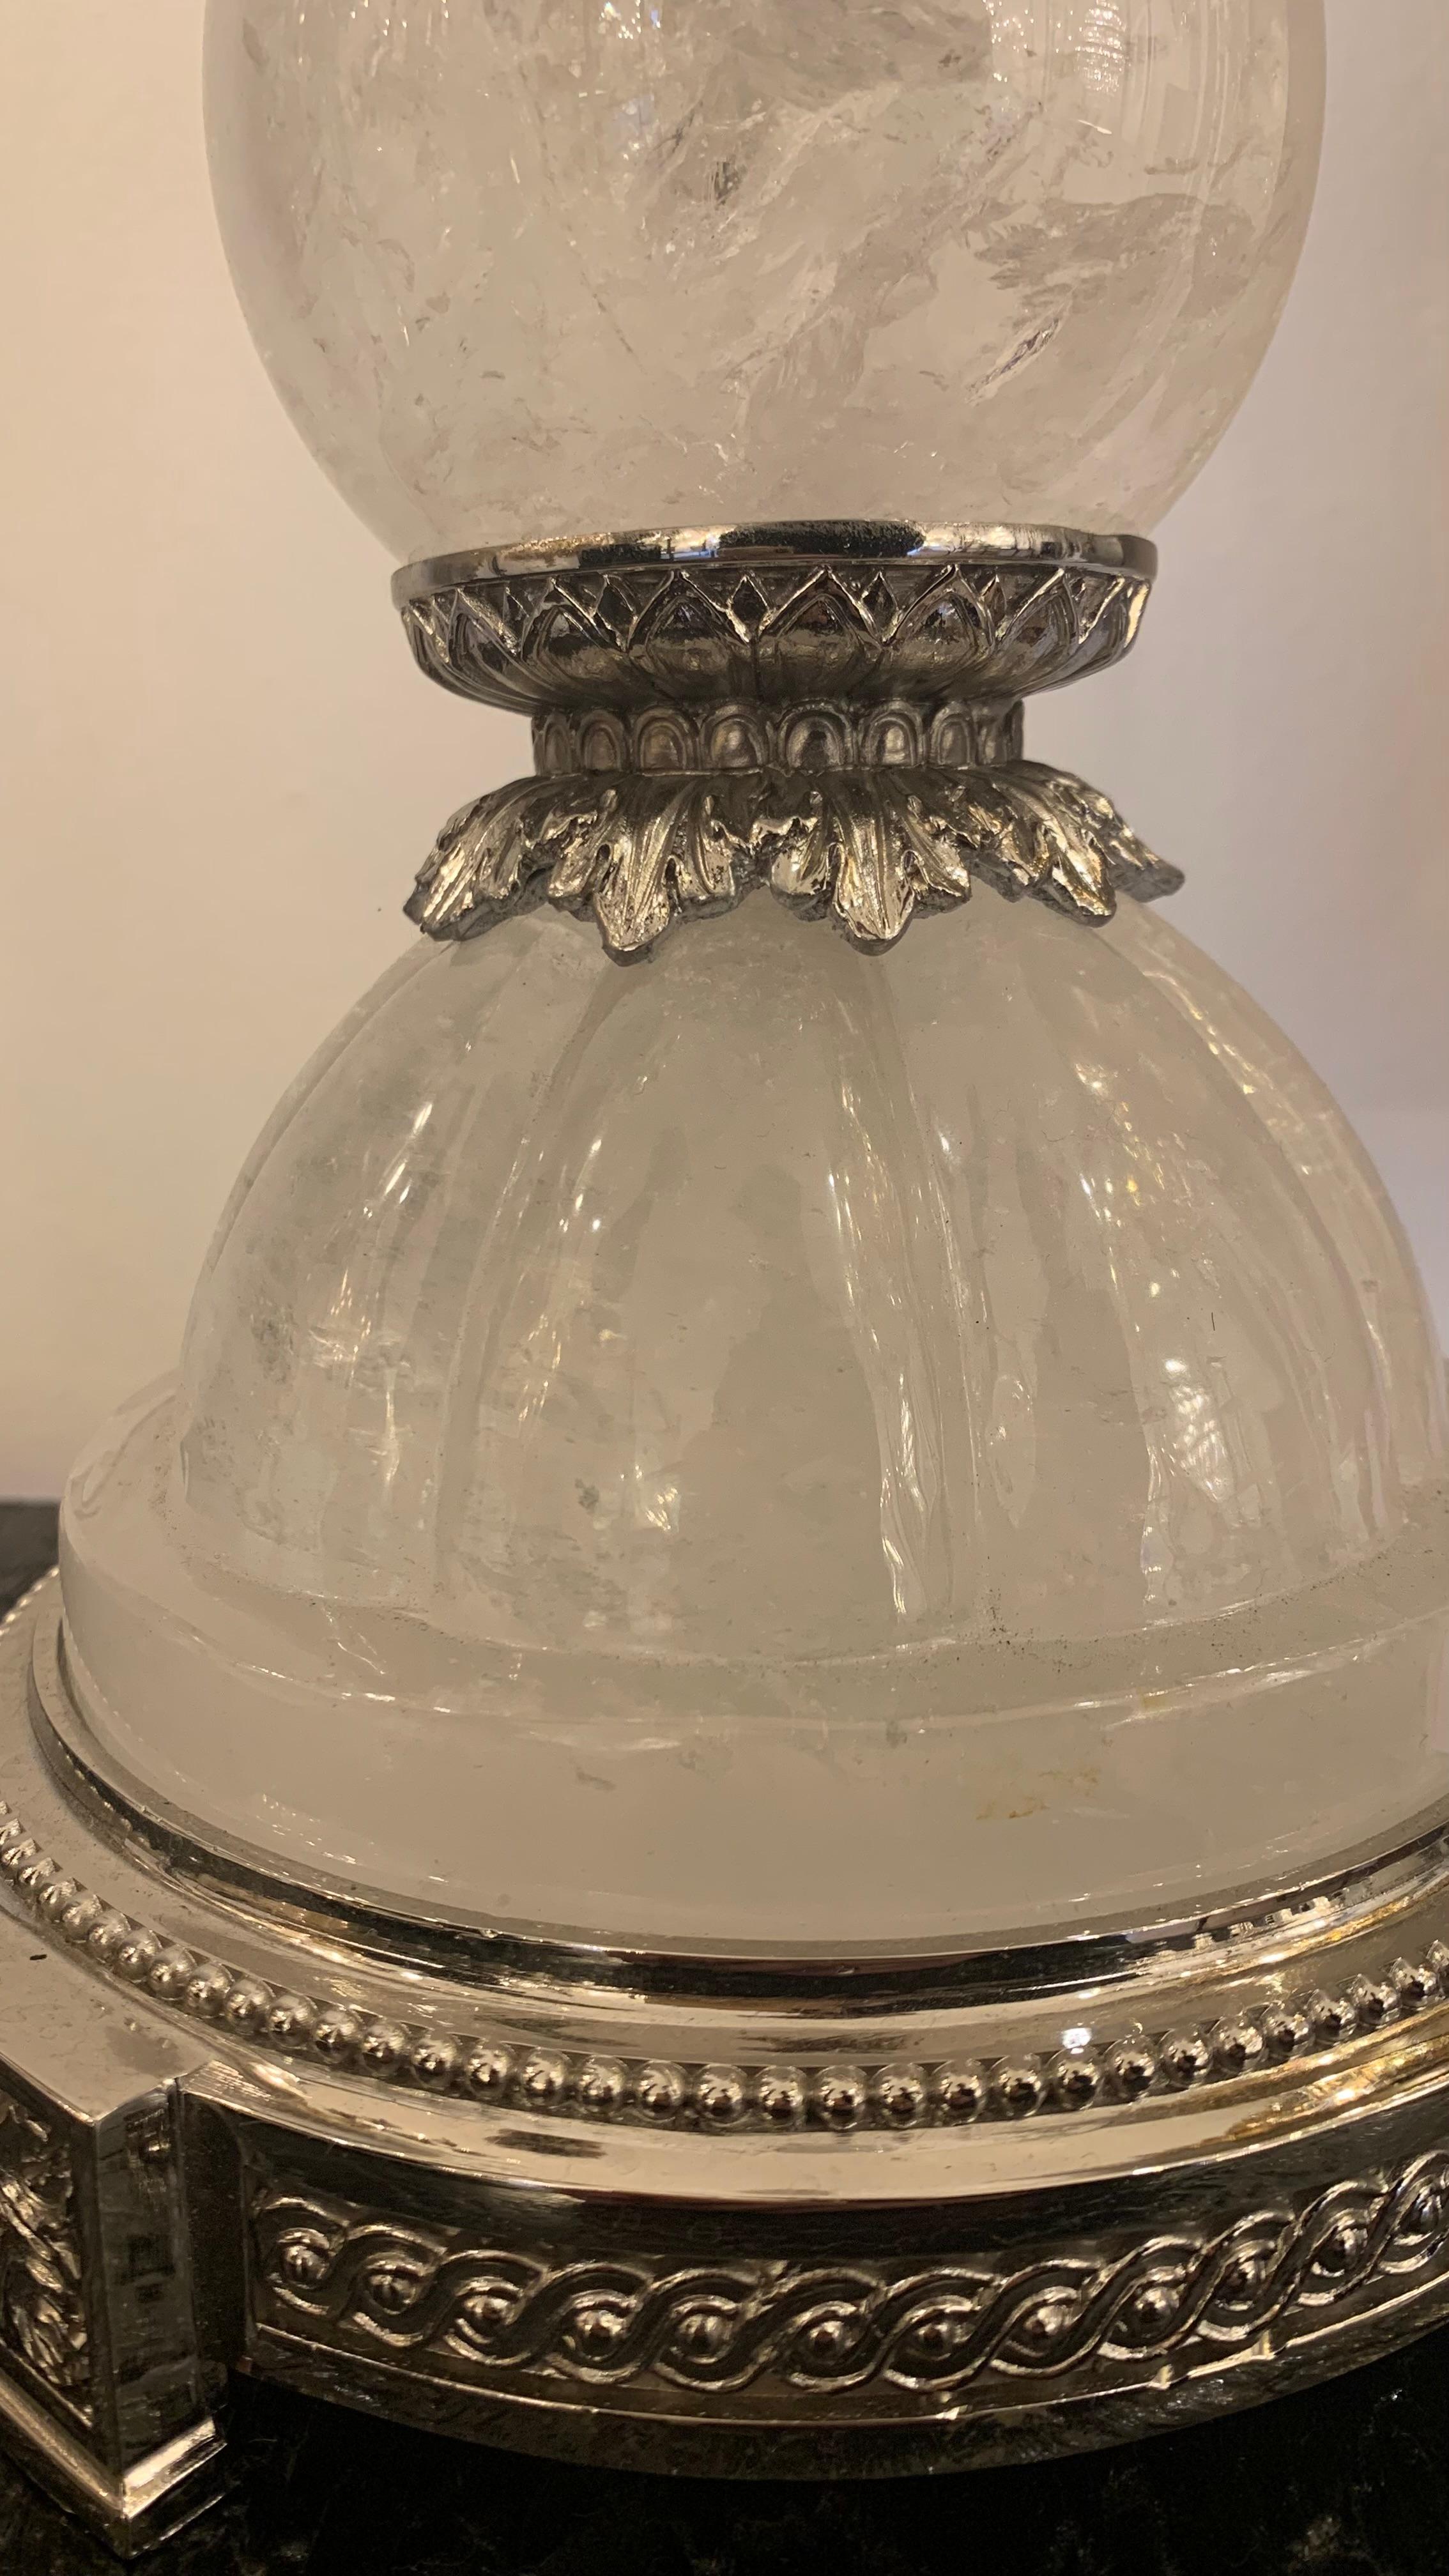 Diese majestätische und elegante Lampe aus Nickel-Bronze und Bergkristall ist eine Kreation aus unserer Werkstatt.
Er besteht aus vier runden Teilen aus Bergkristall. Die Bronzeteile sind fein mit einem griechischen Fries verziert, der manchmal von